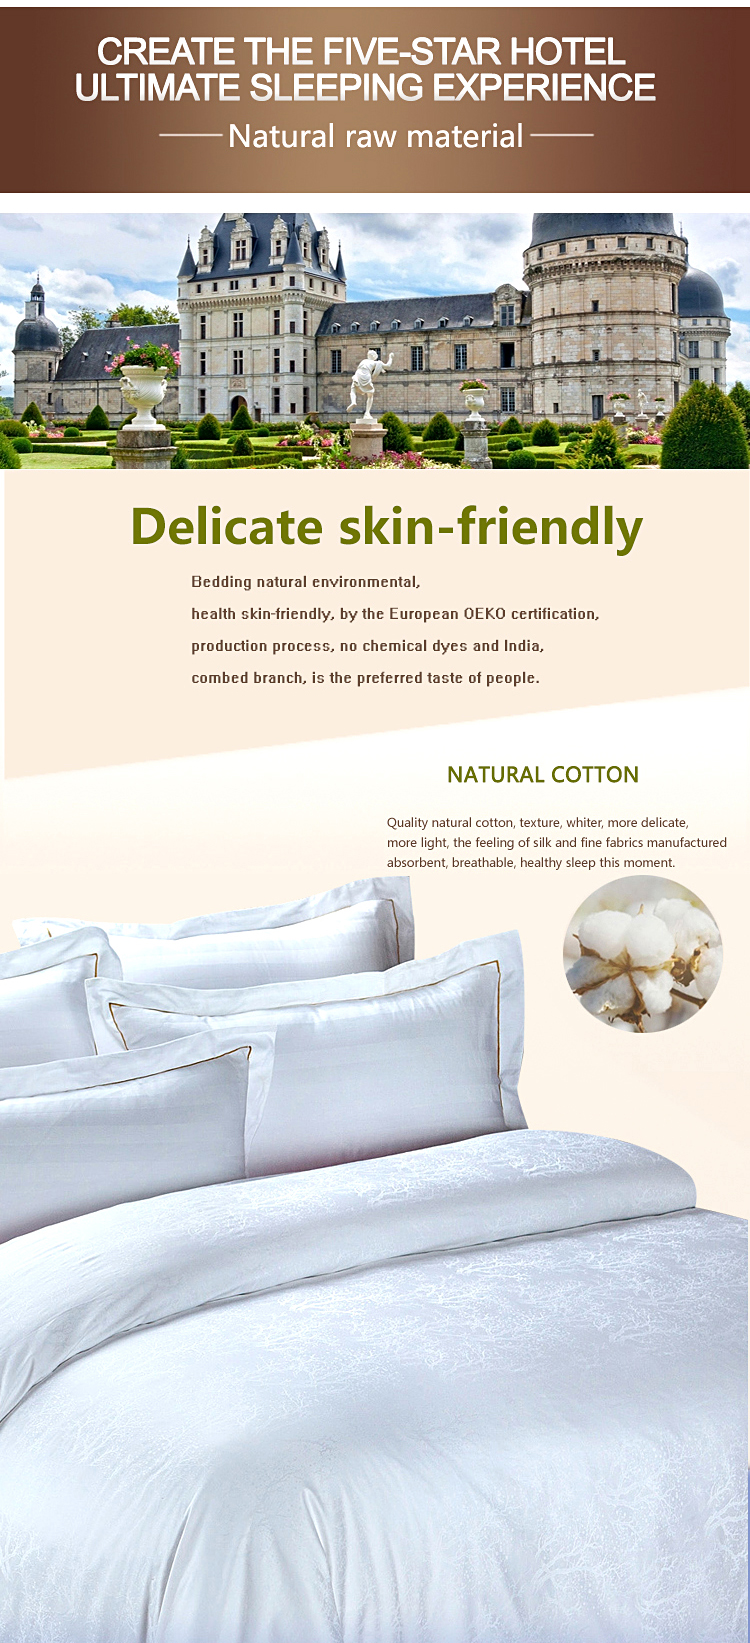 Cotton 4PCS Bedspread Cover